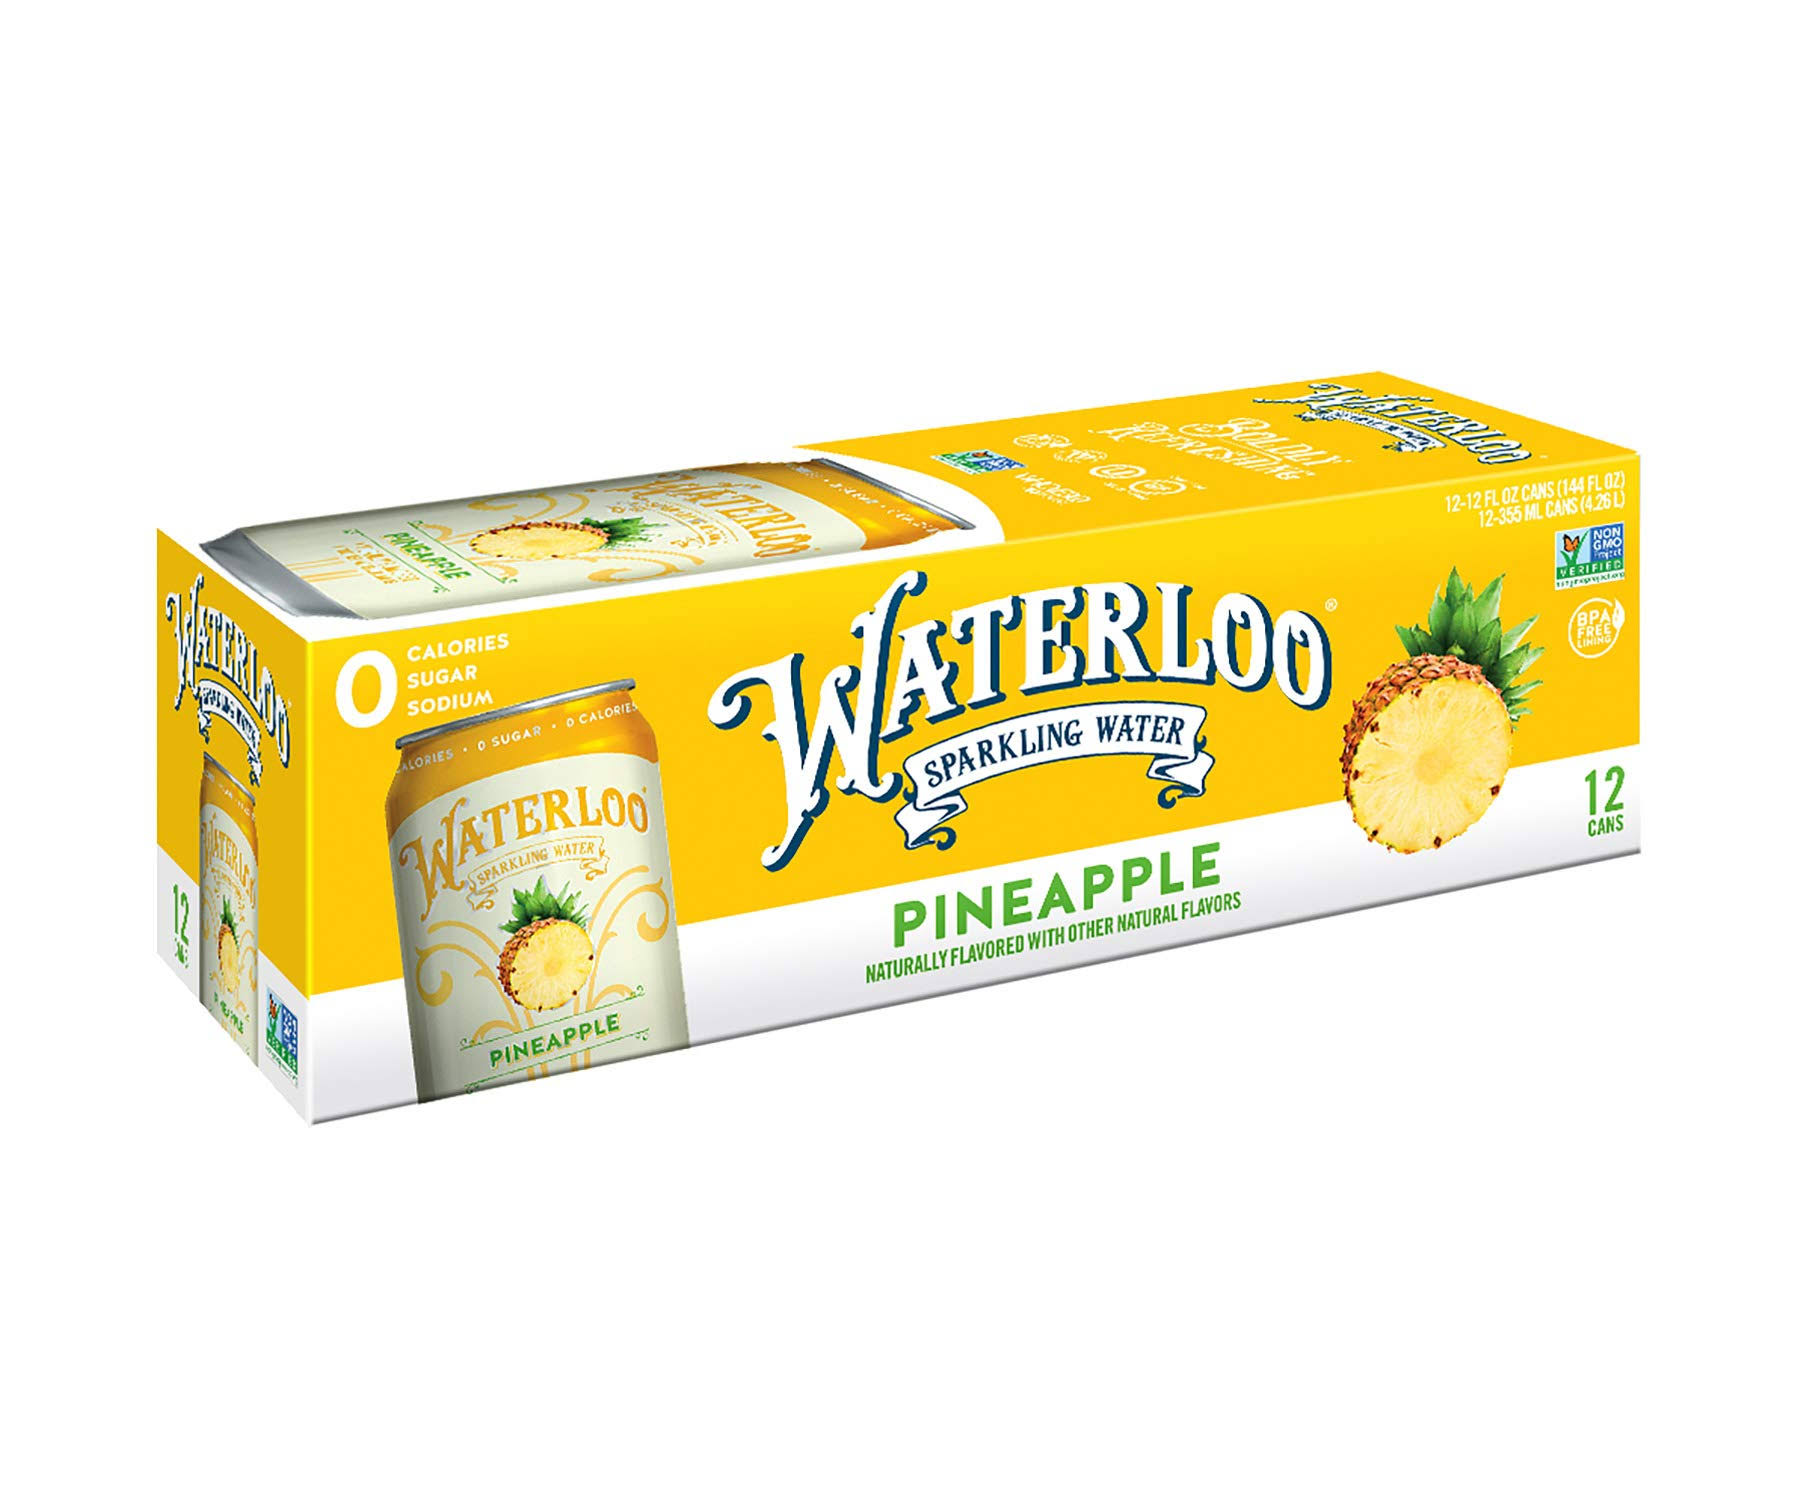 Waterloo Sparkling Water Pineapple